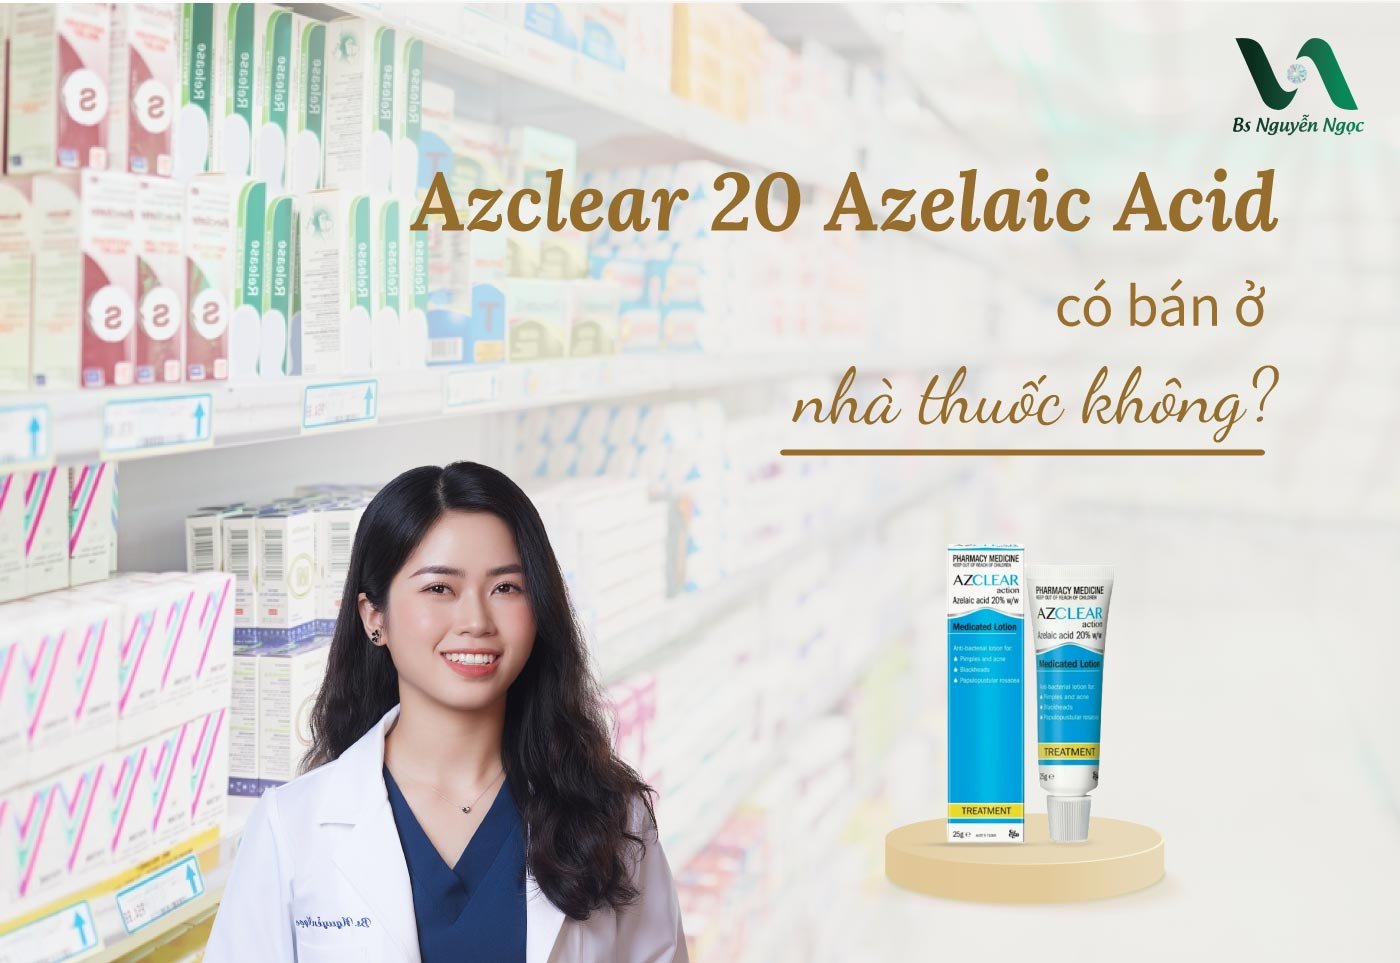 Azclear 20 Azelaic Acid có bán ở nhà thuốc không?